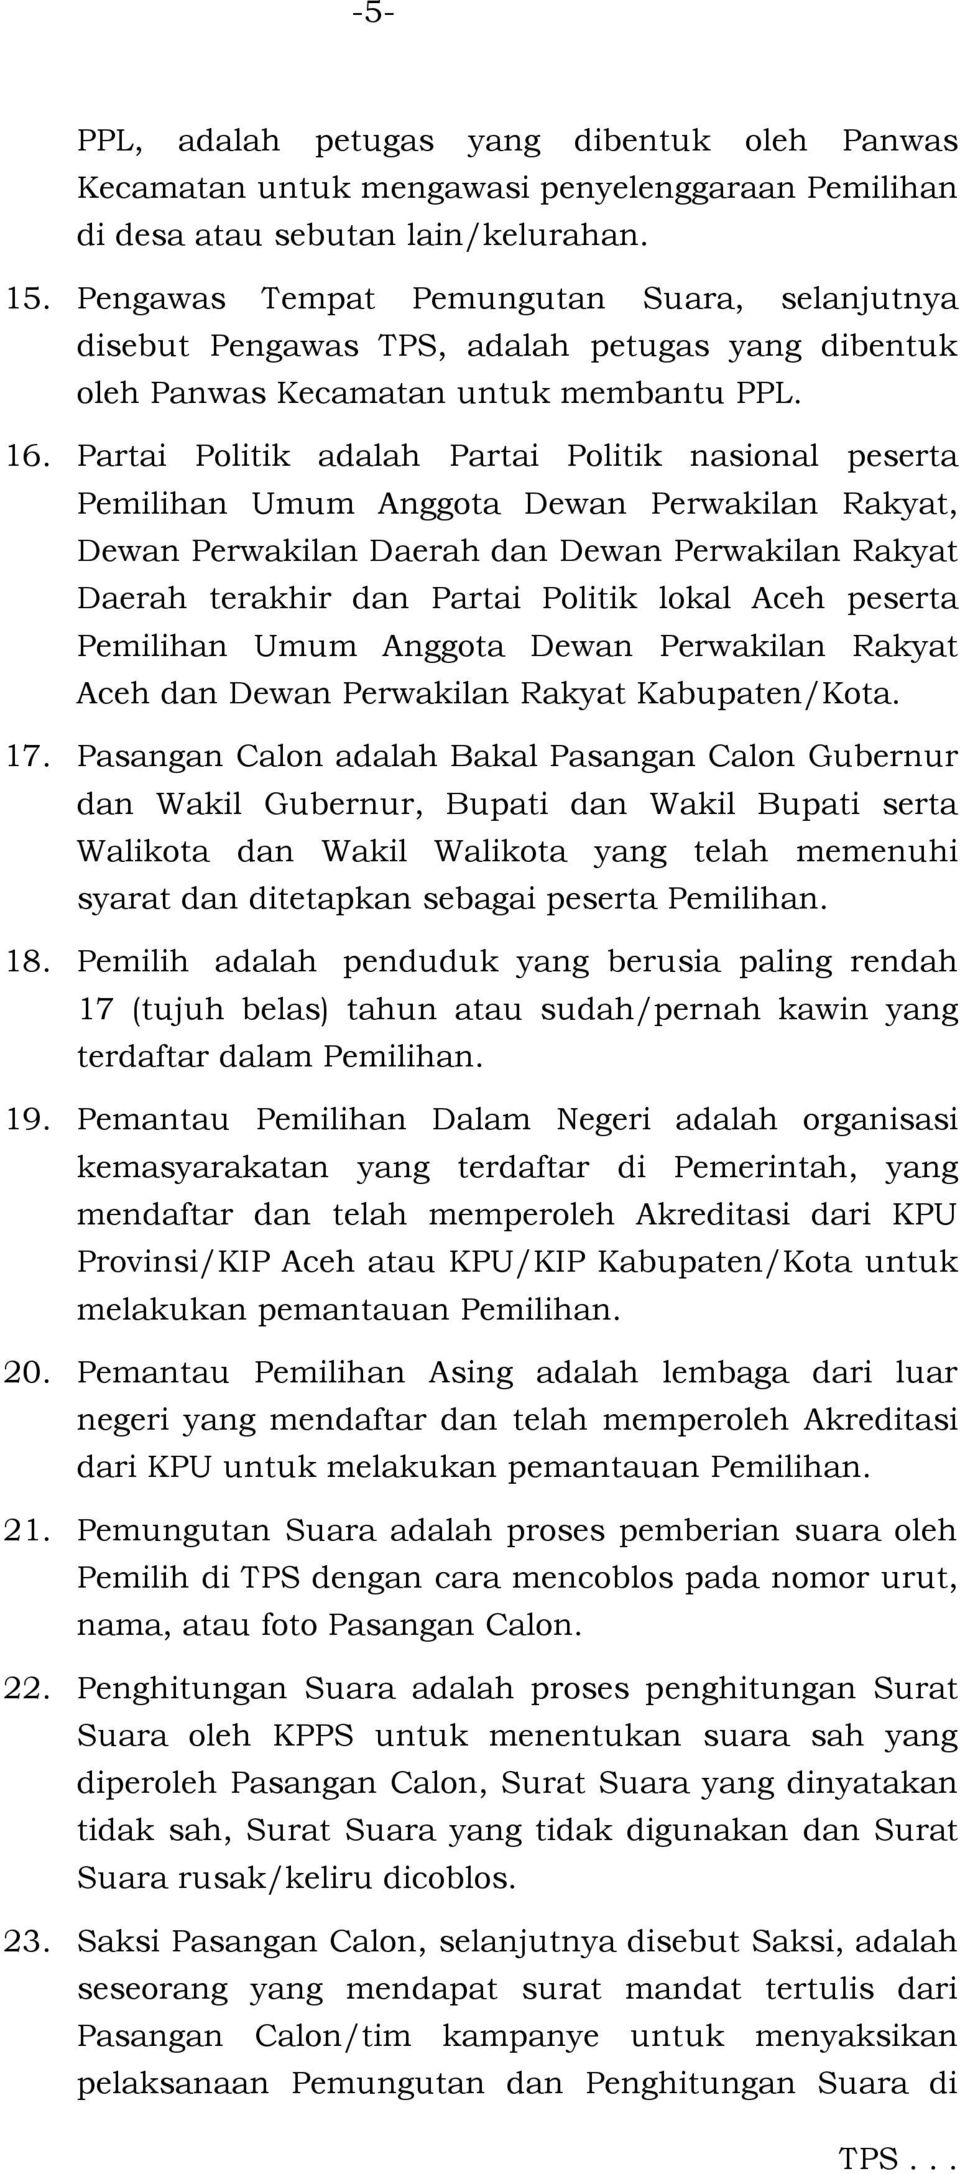 Partai Politik adalah Partai Politik nasional peserta Pemilihan Umum Anggota Dewan Perwakilan Rakyat, Dewan Perwakilan Daerah dan Dewan Perwakilan Rakyat Daerah terakhir dan Partai Politik lokal Aceh